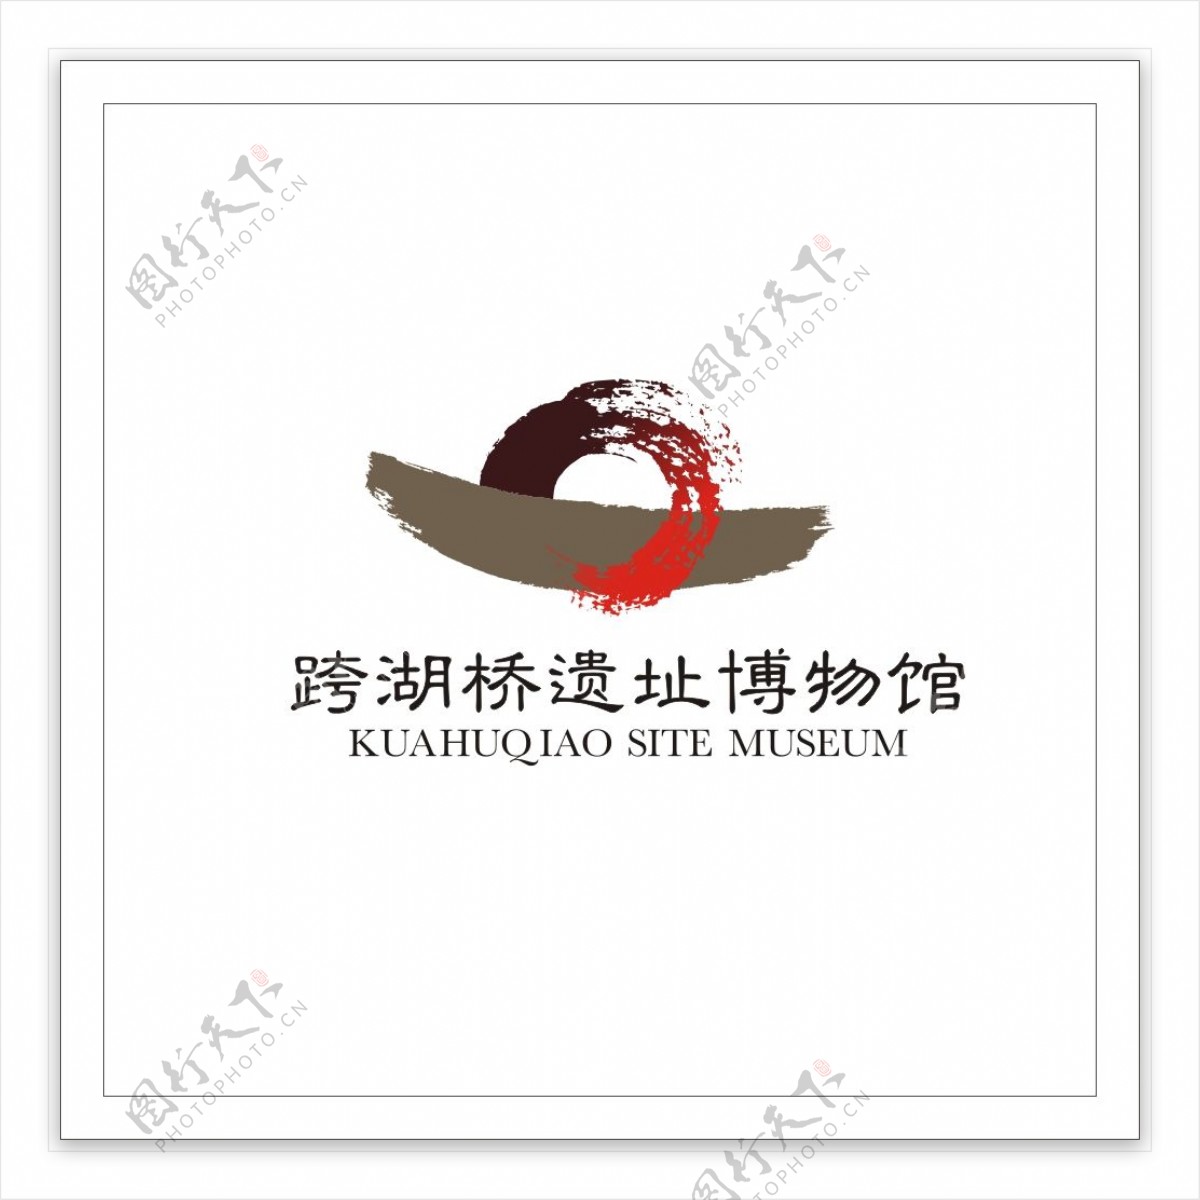 水墨书法跨湖桥遗址博物馆logo矢量